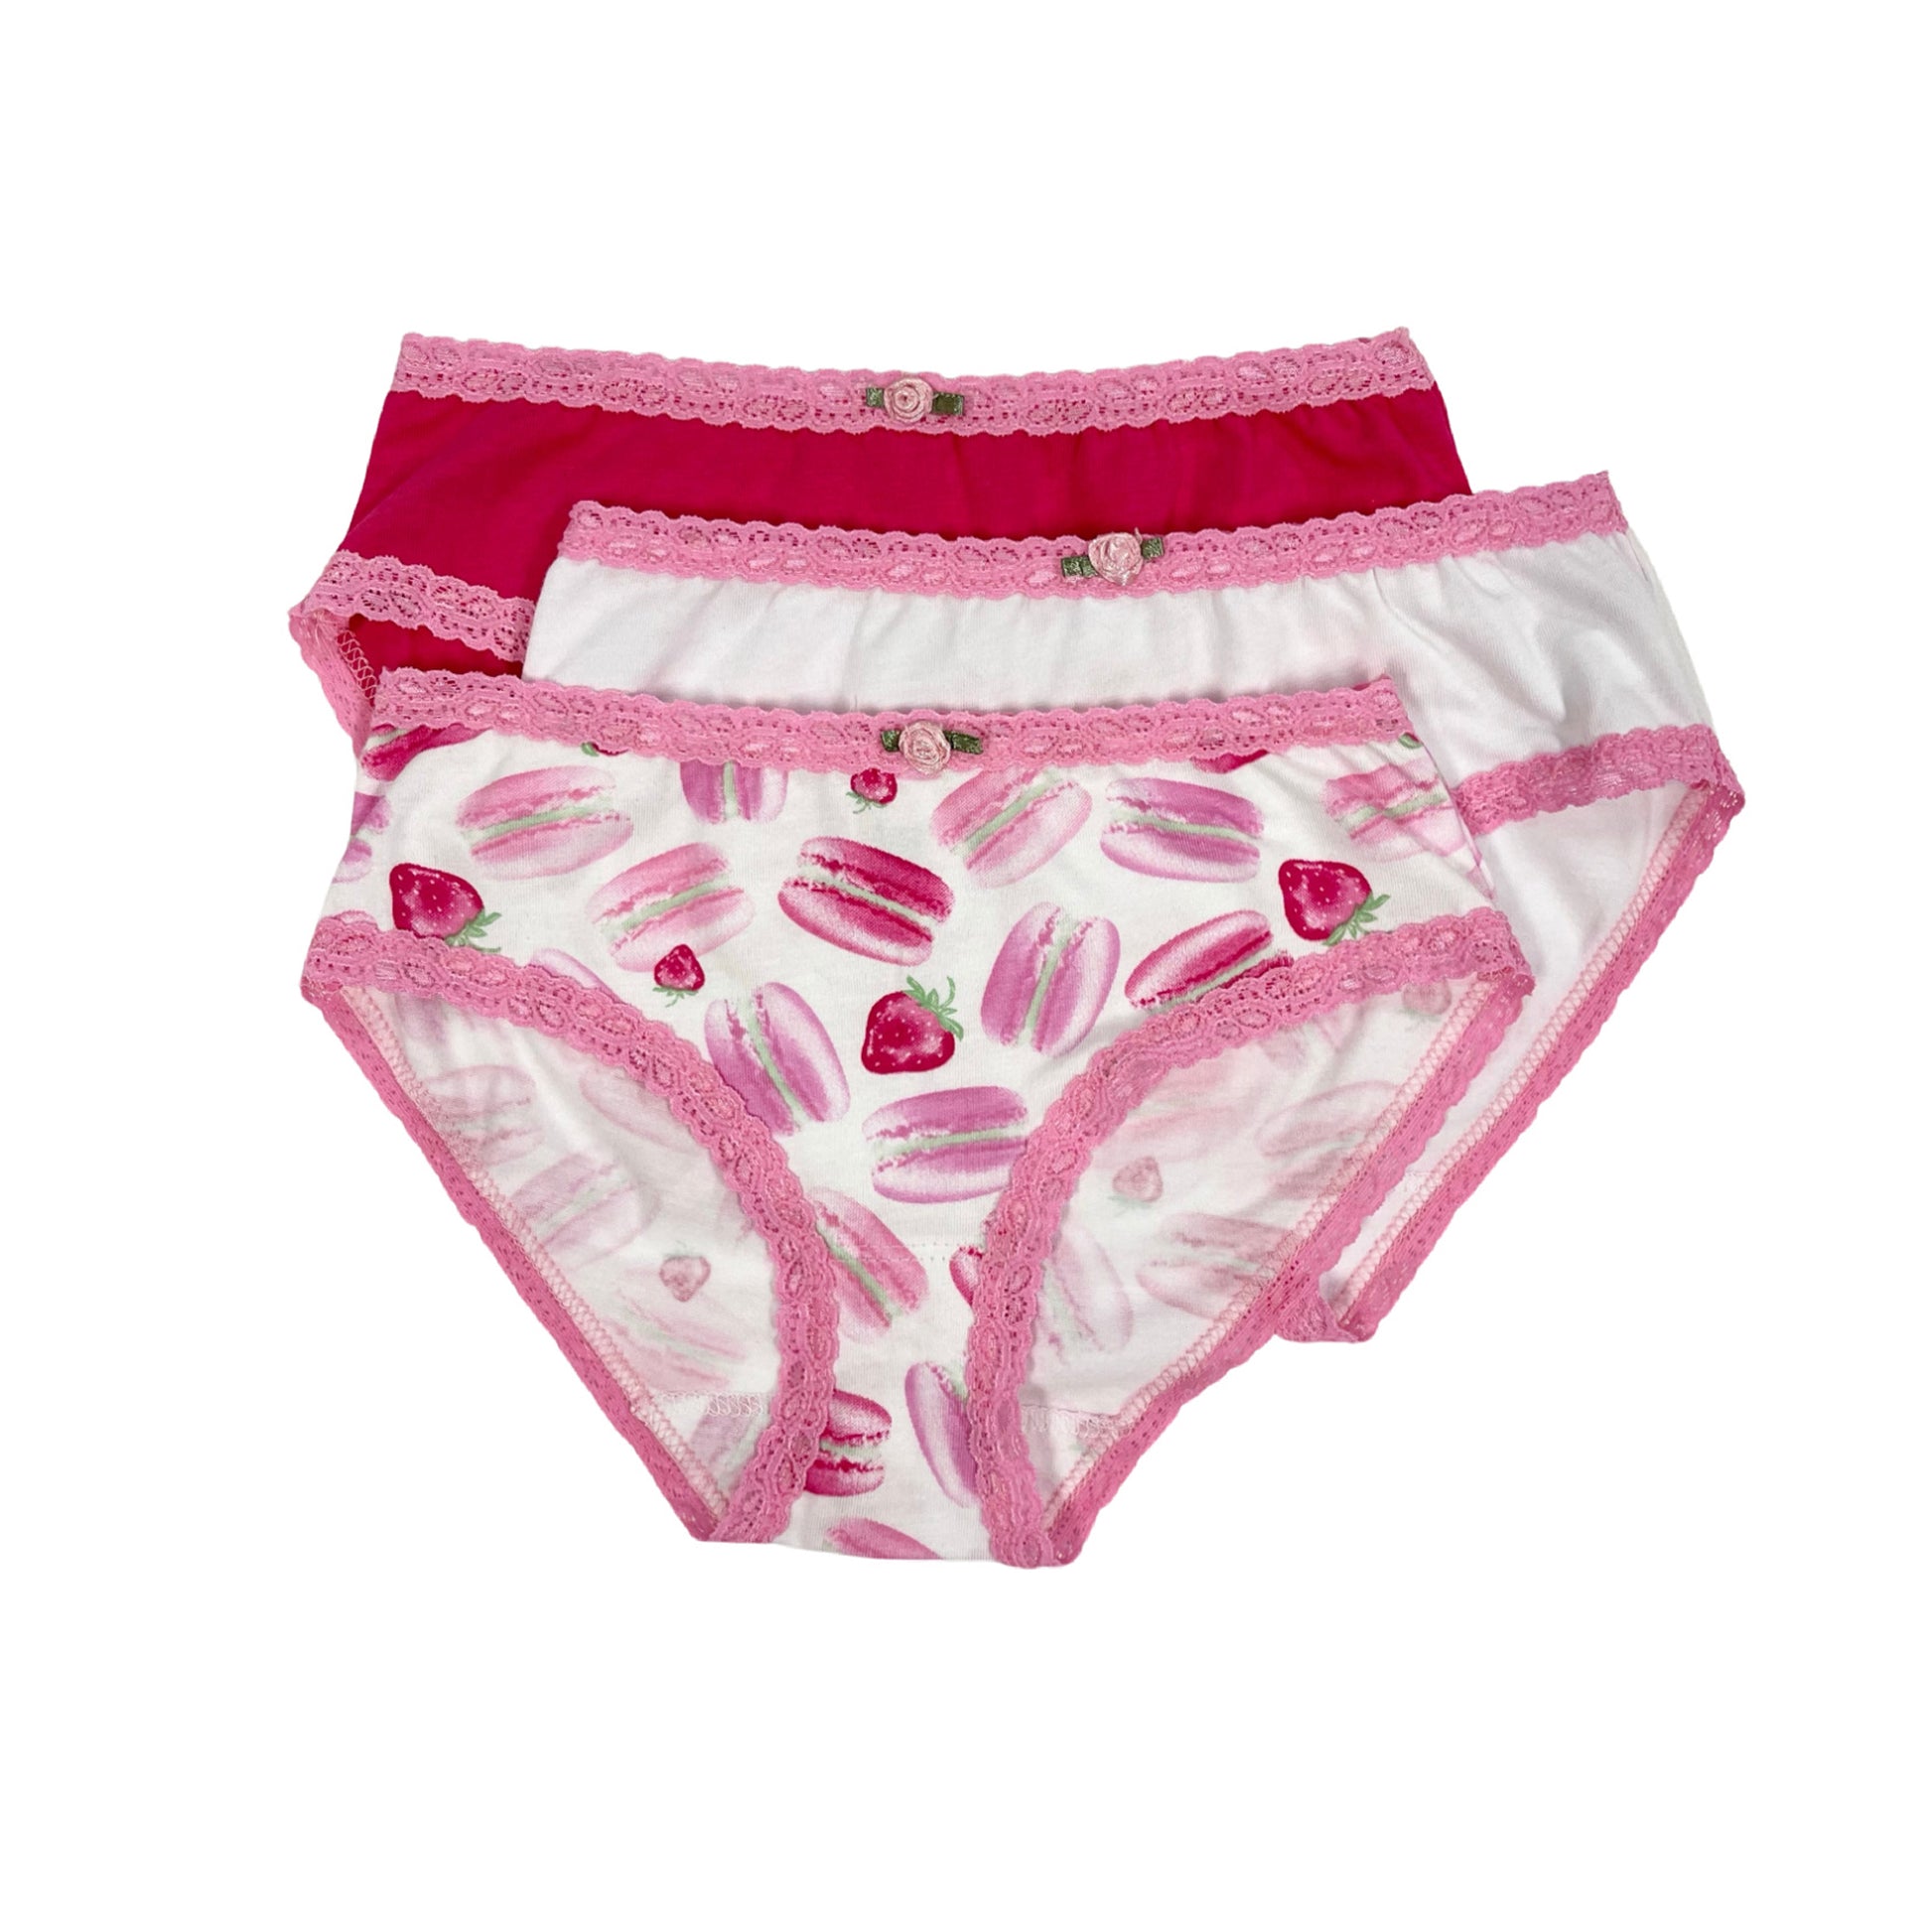 Hello Kitty 7-Pack Cotton Underwear, Little Girls & Big Girls